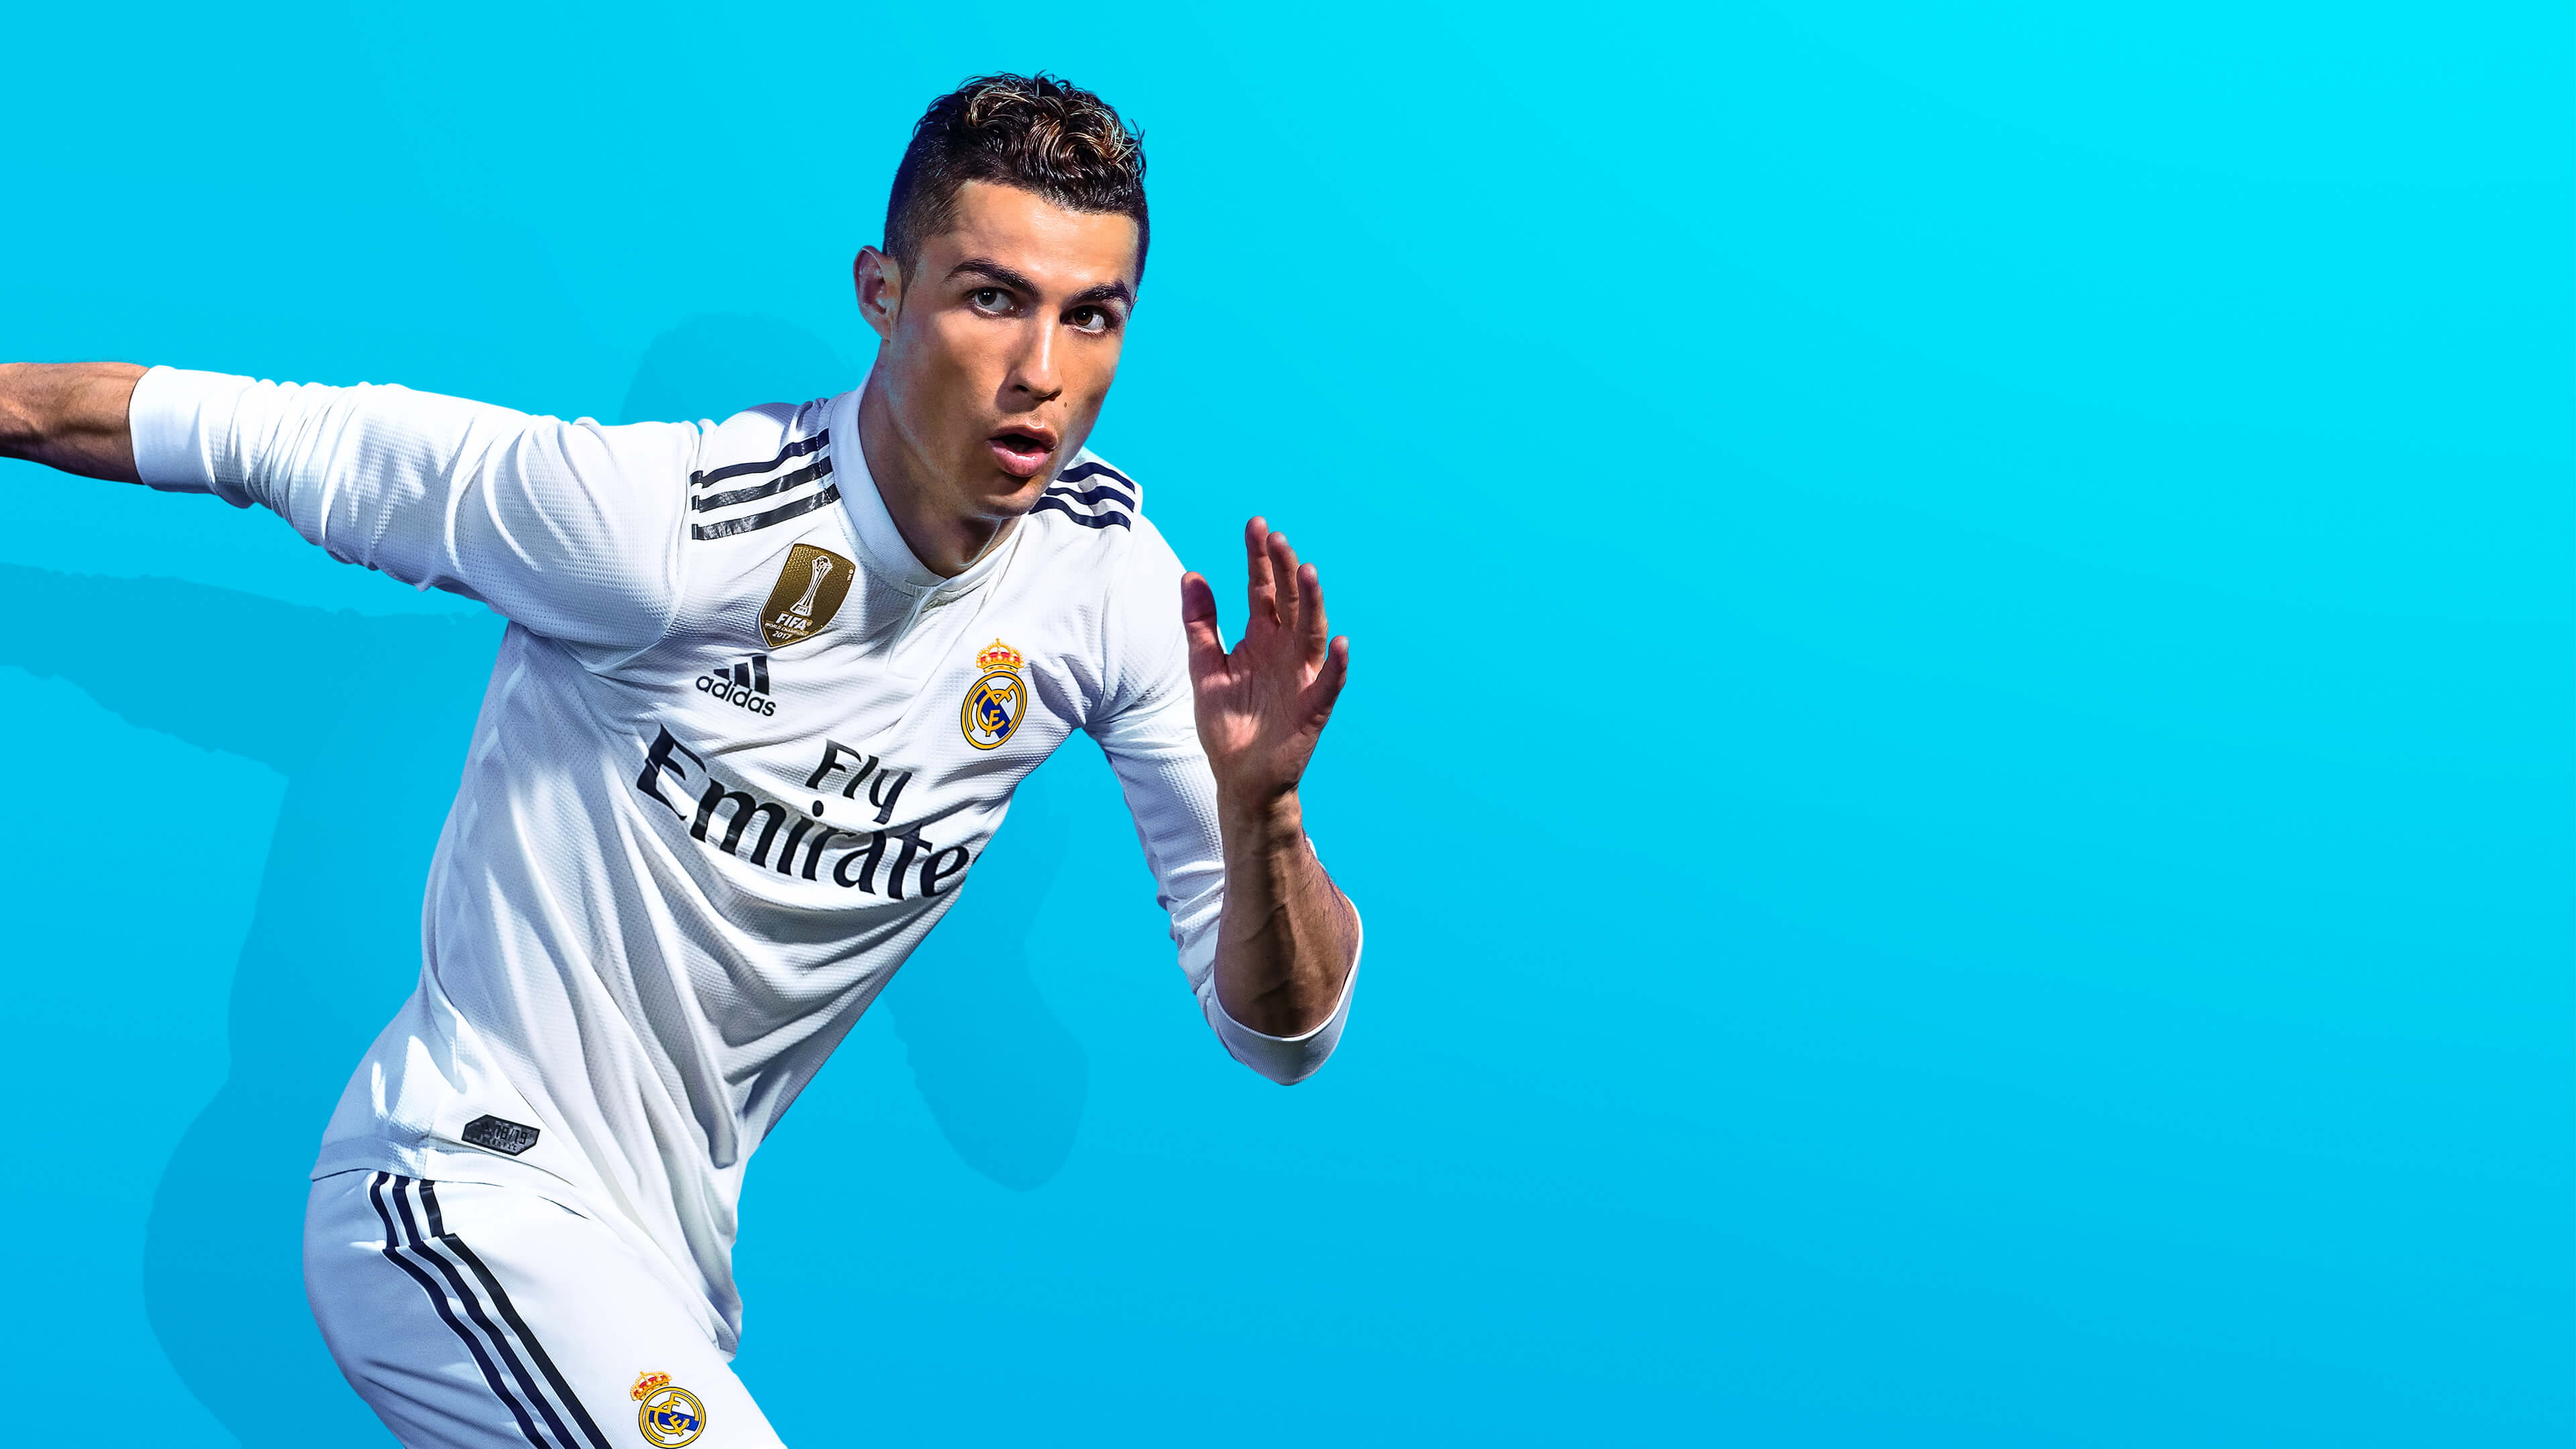 Bộ Sưu Tập Hình Nền Ronaldo Real Madrid Full 4K Hơn 999 Hình Nền Cực Chất